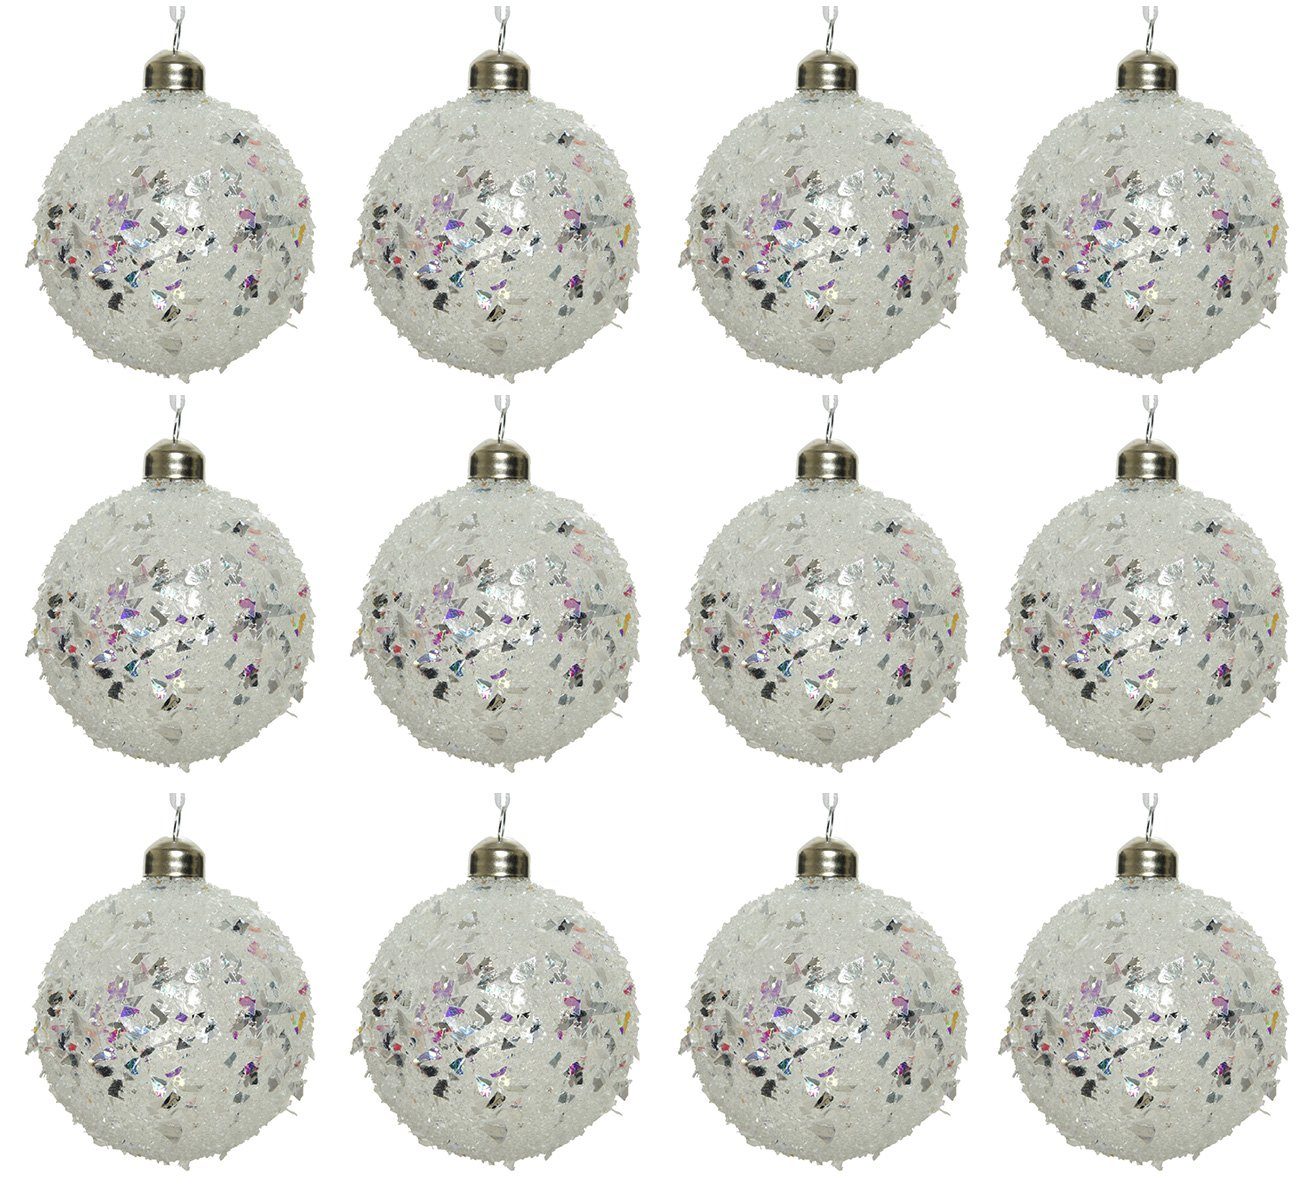 Decoris season decorations Weihnachtsbaumkugel, Weihnachtskugeln Glas 8cm im Glitzer Look 12er Set Klar irisierend